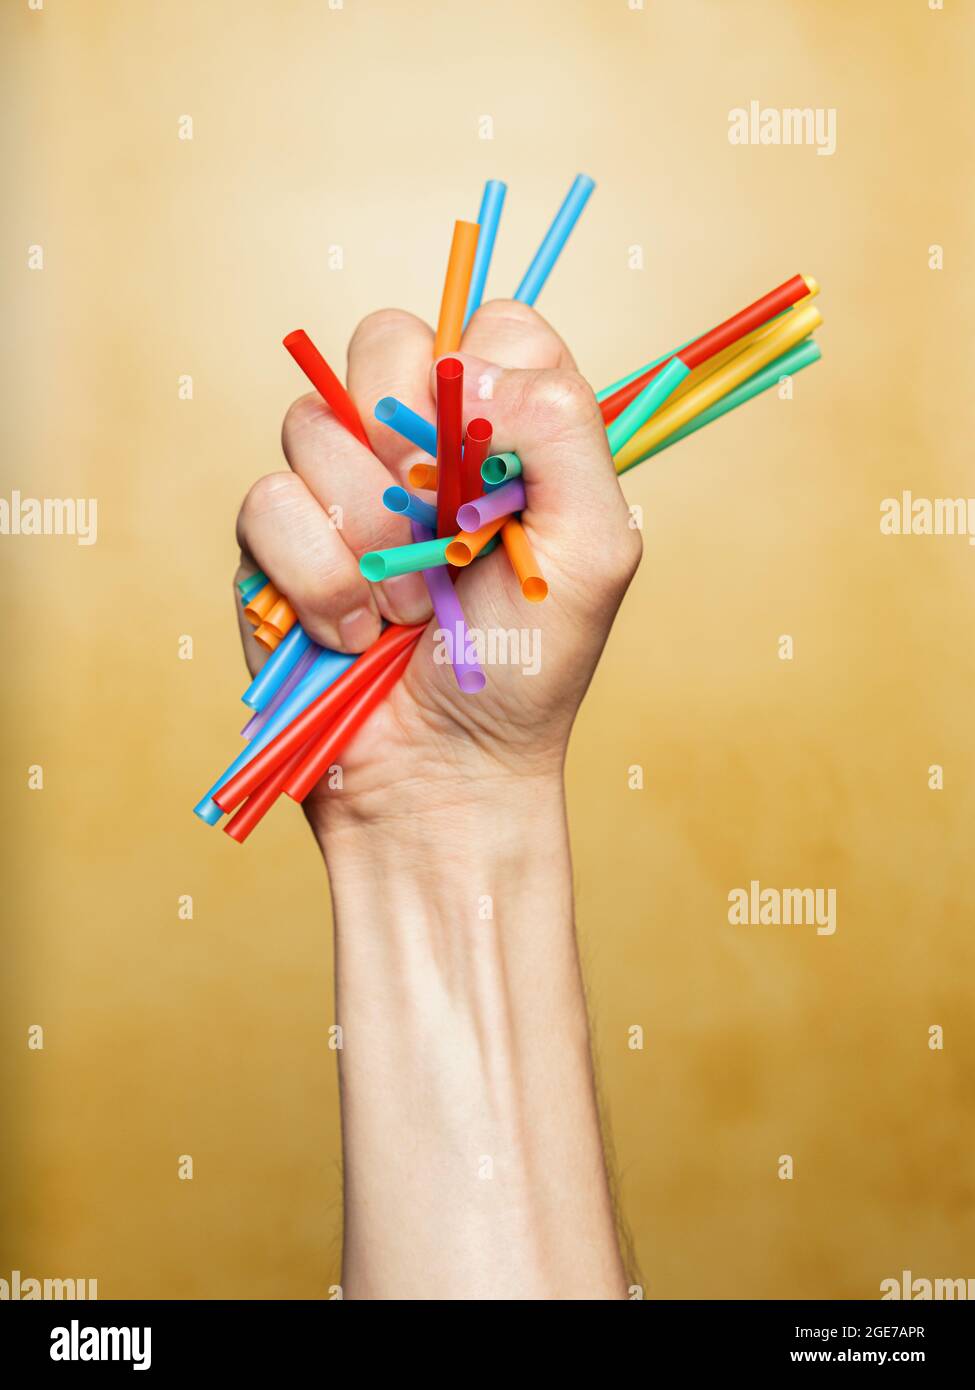 La main de l'homme écrasant des pailles en plastique colorées Banque D'Images